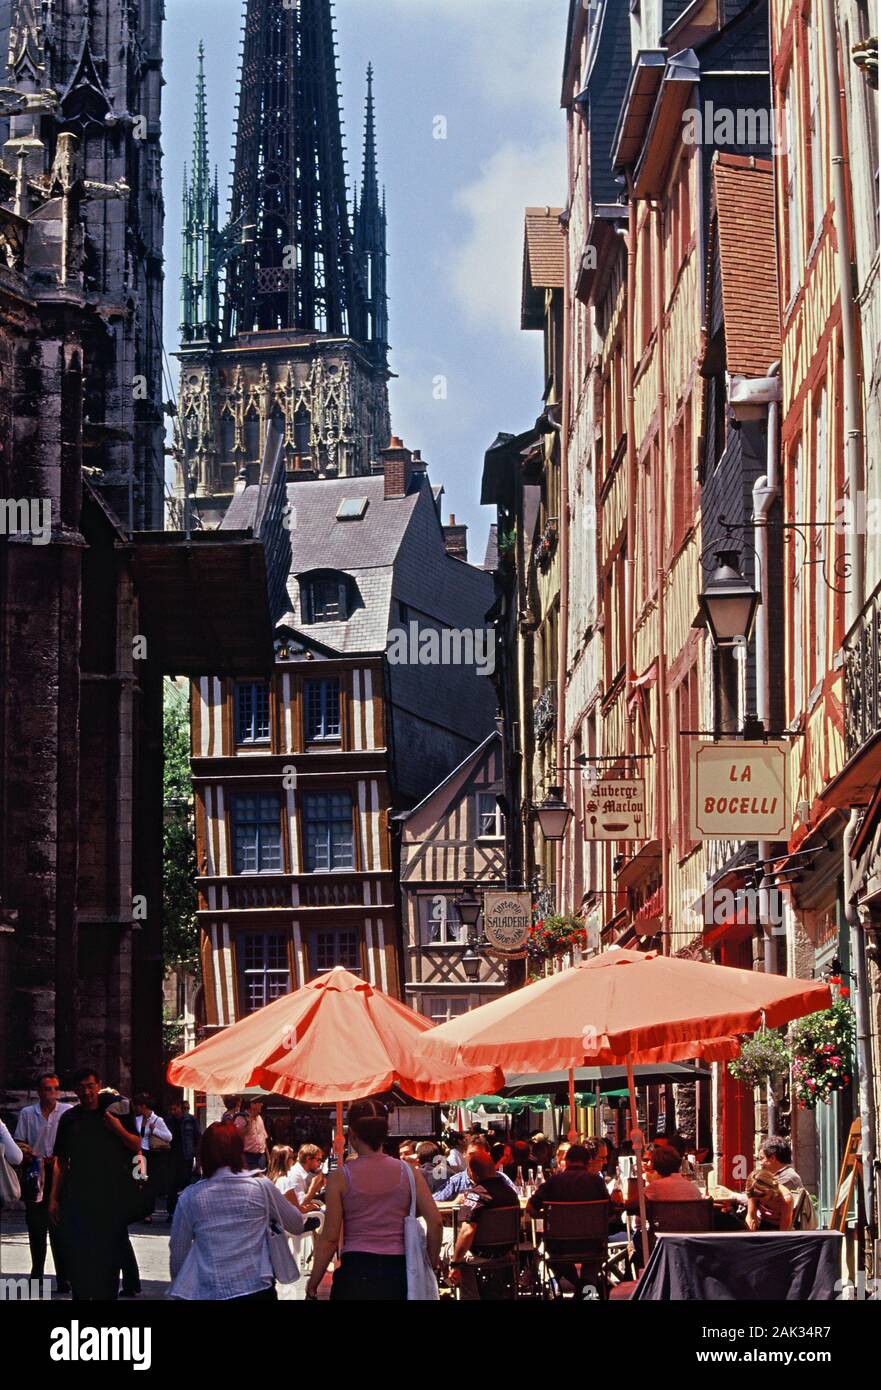 Vue de la rue Martainville avec l'église gothique de Saint Maclou à Rouen dans le département Seine-Maritime, France. (Photo non datée) | worl Banque D'Images